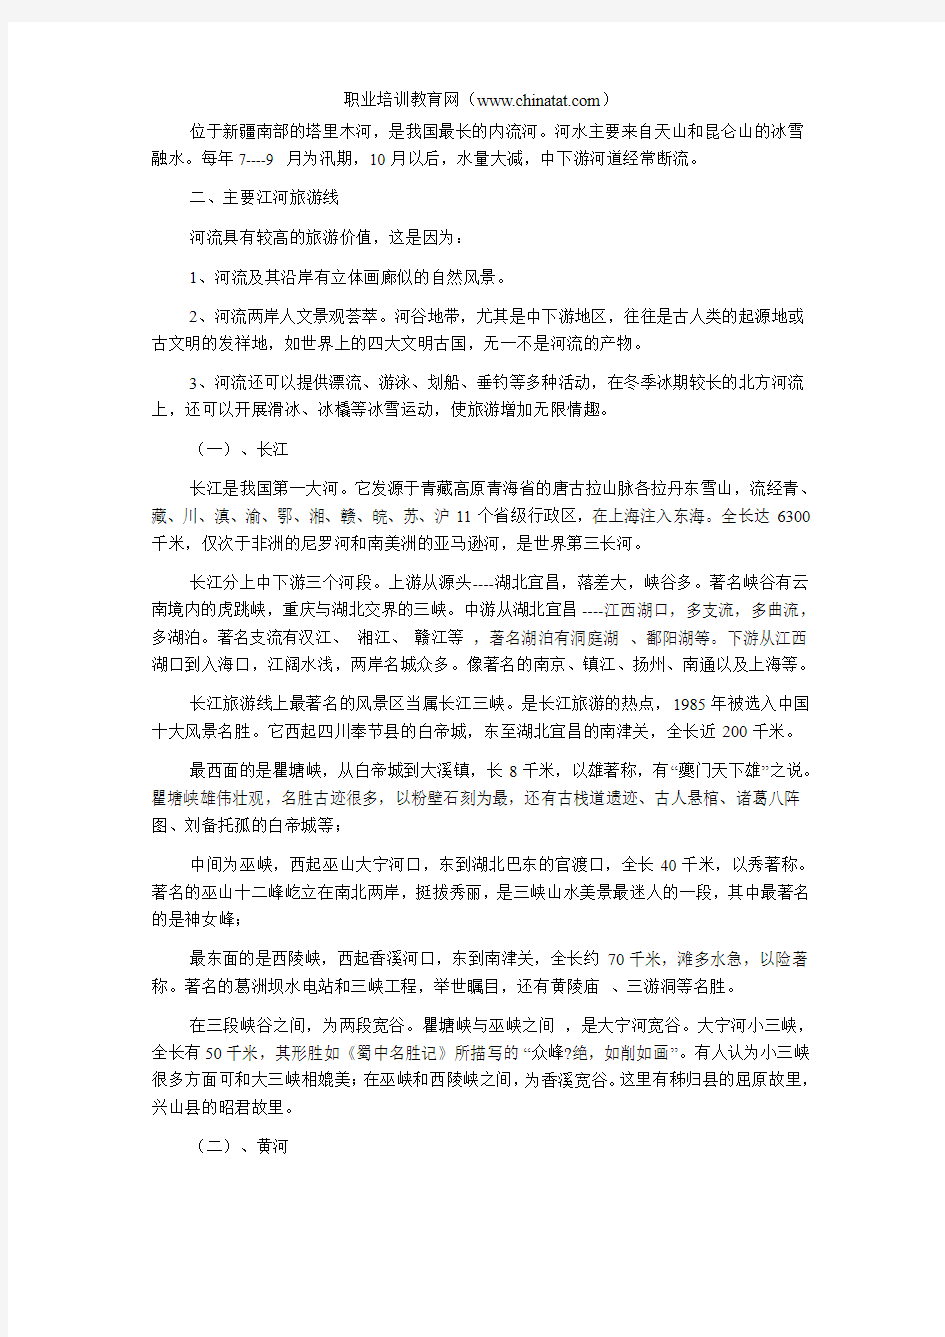 2013年公务员考试行测常识判断复习资料：中国水景旅游资源(二)